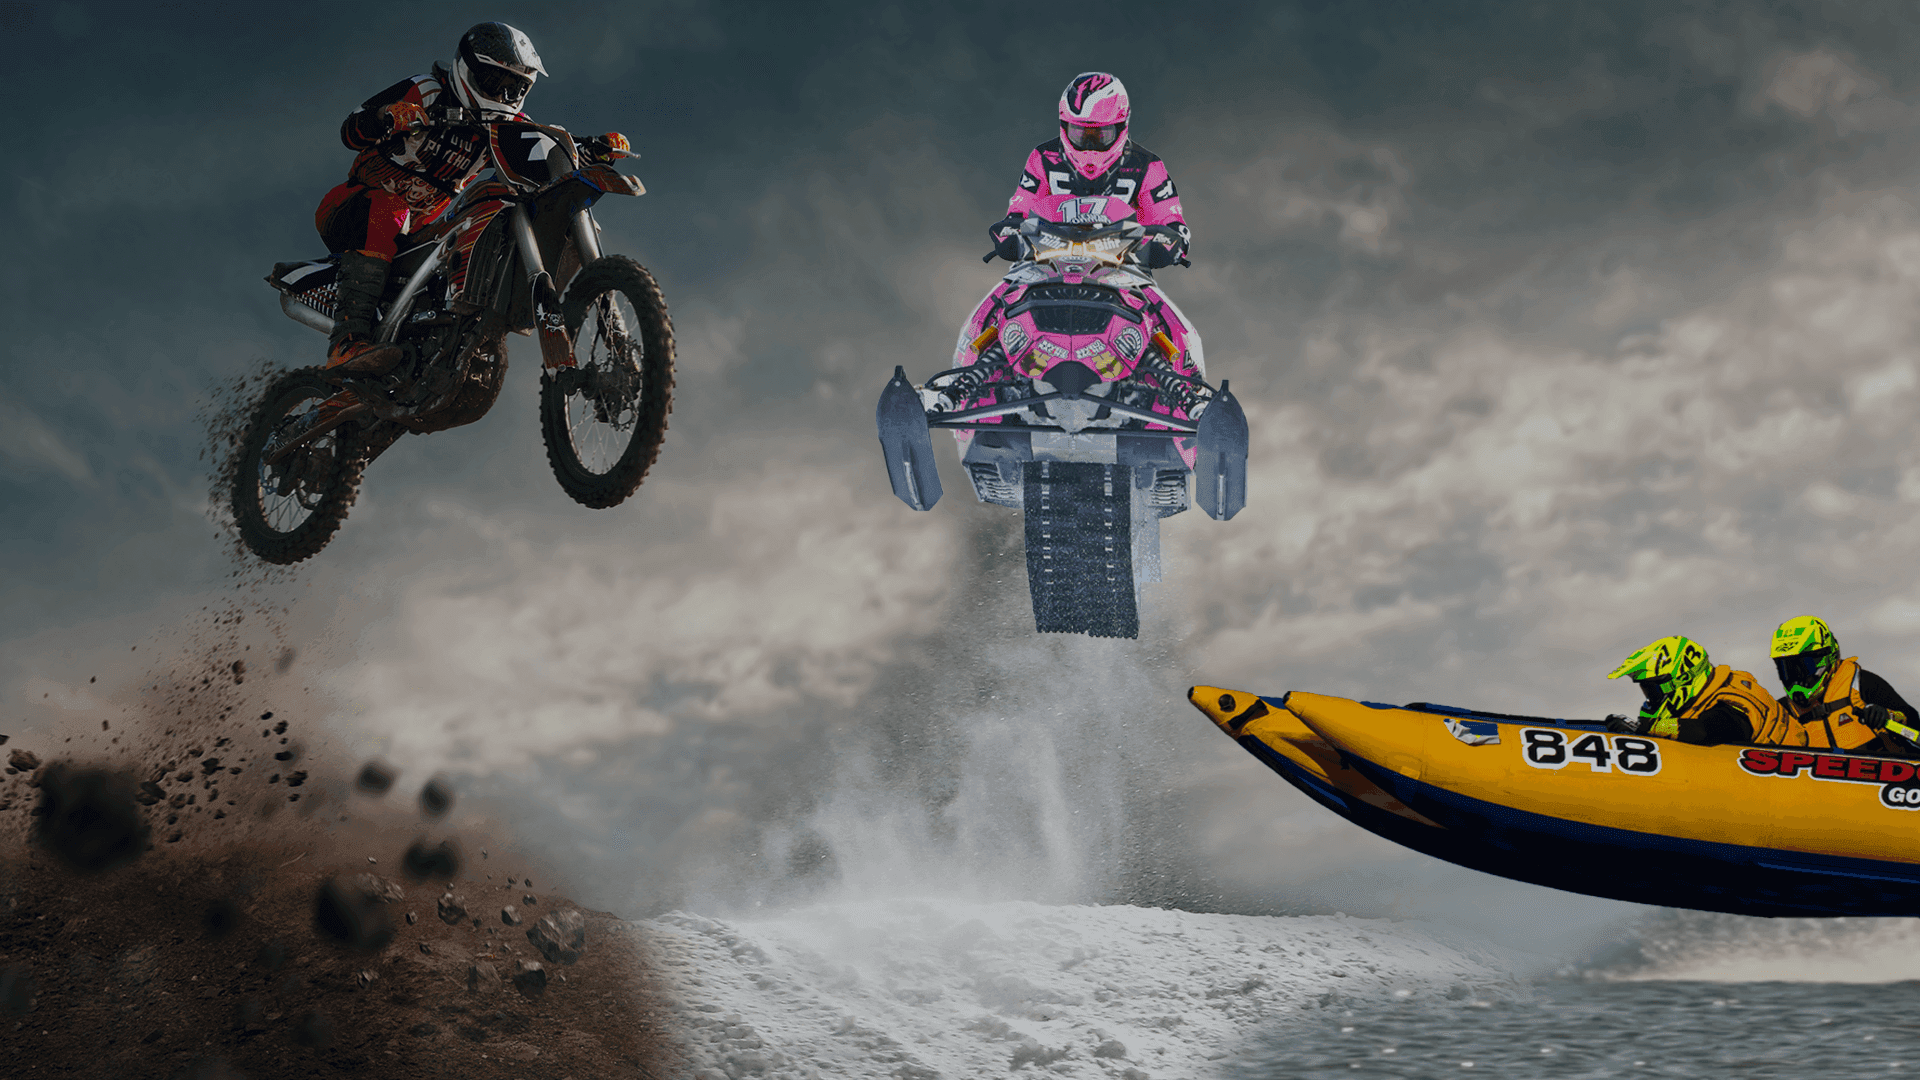 En motocross, en snöskoter och en racerbåt i luften och koncentrerade förare. En actionfylld bild.